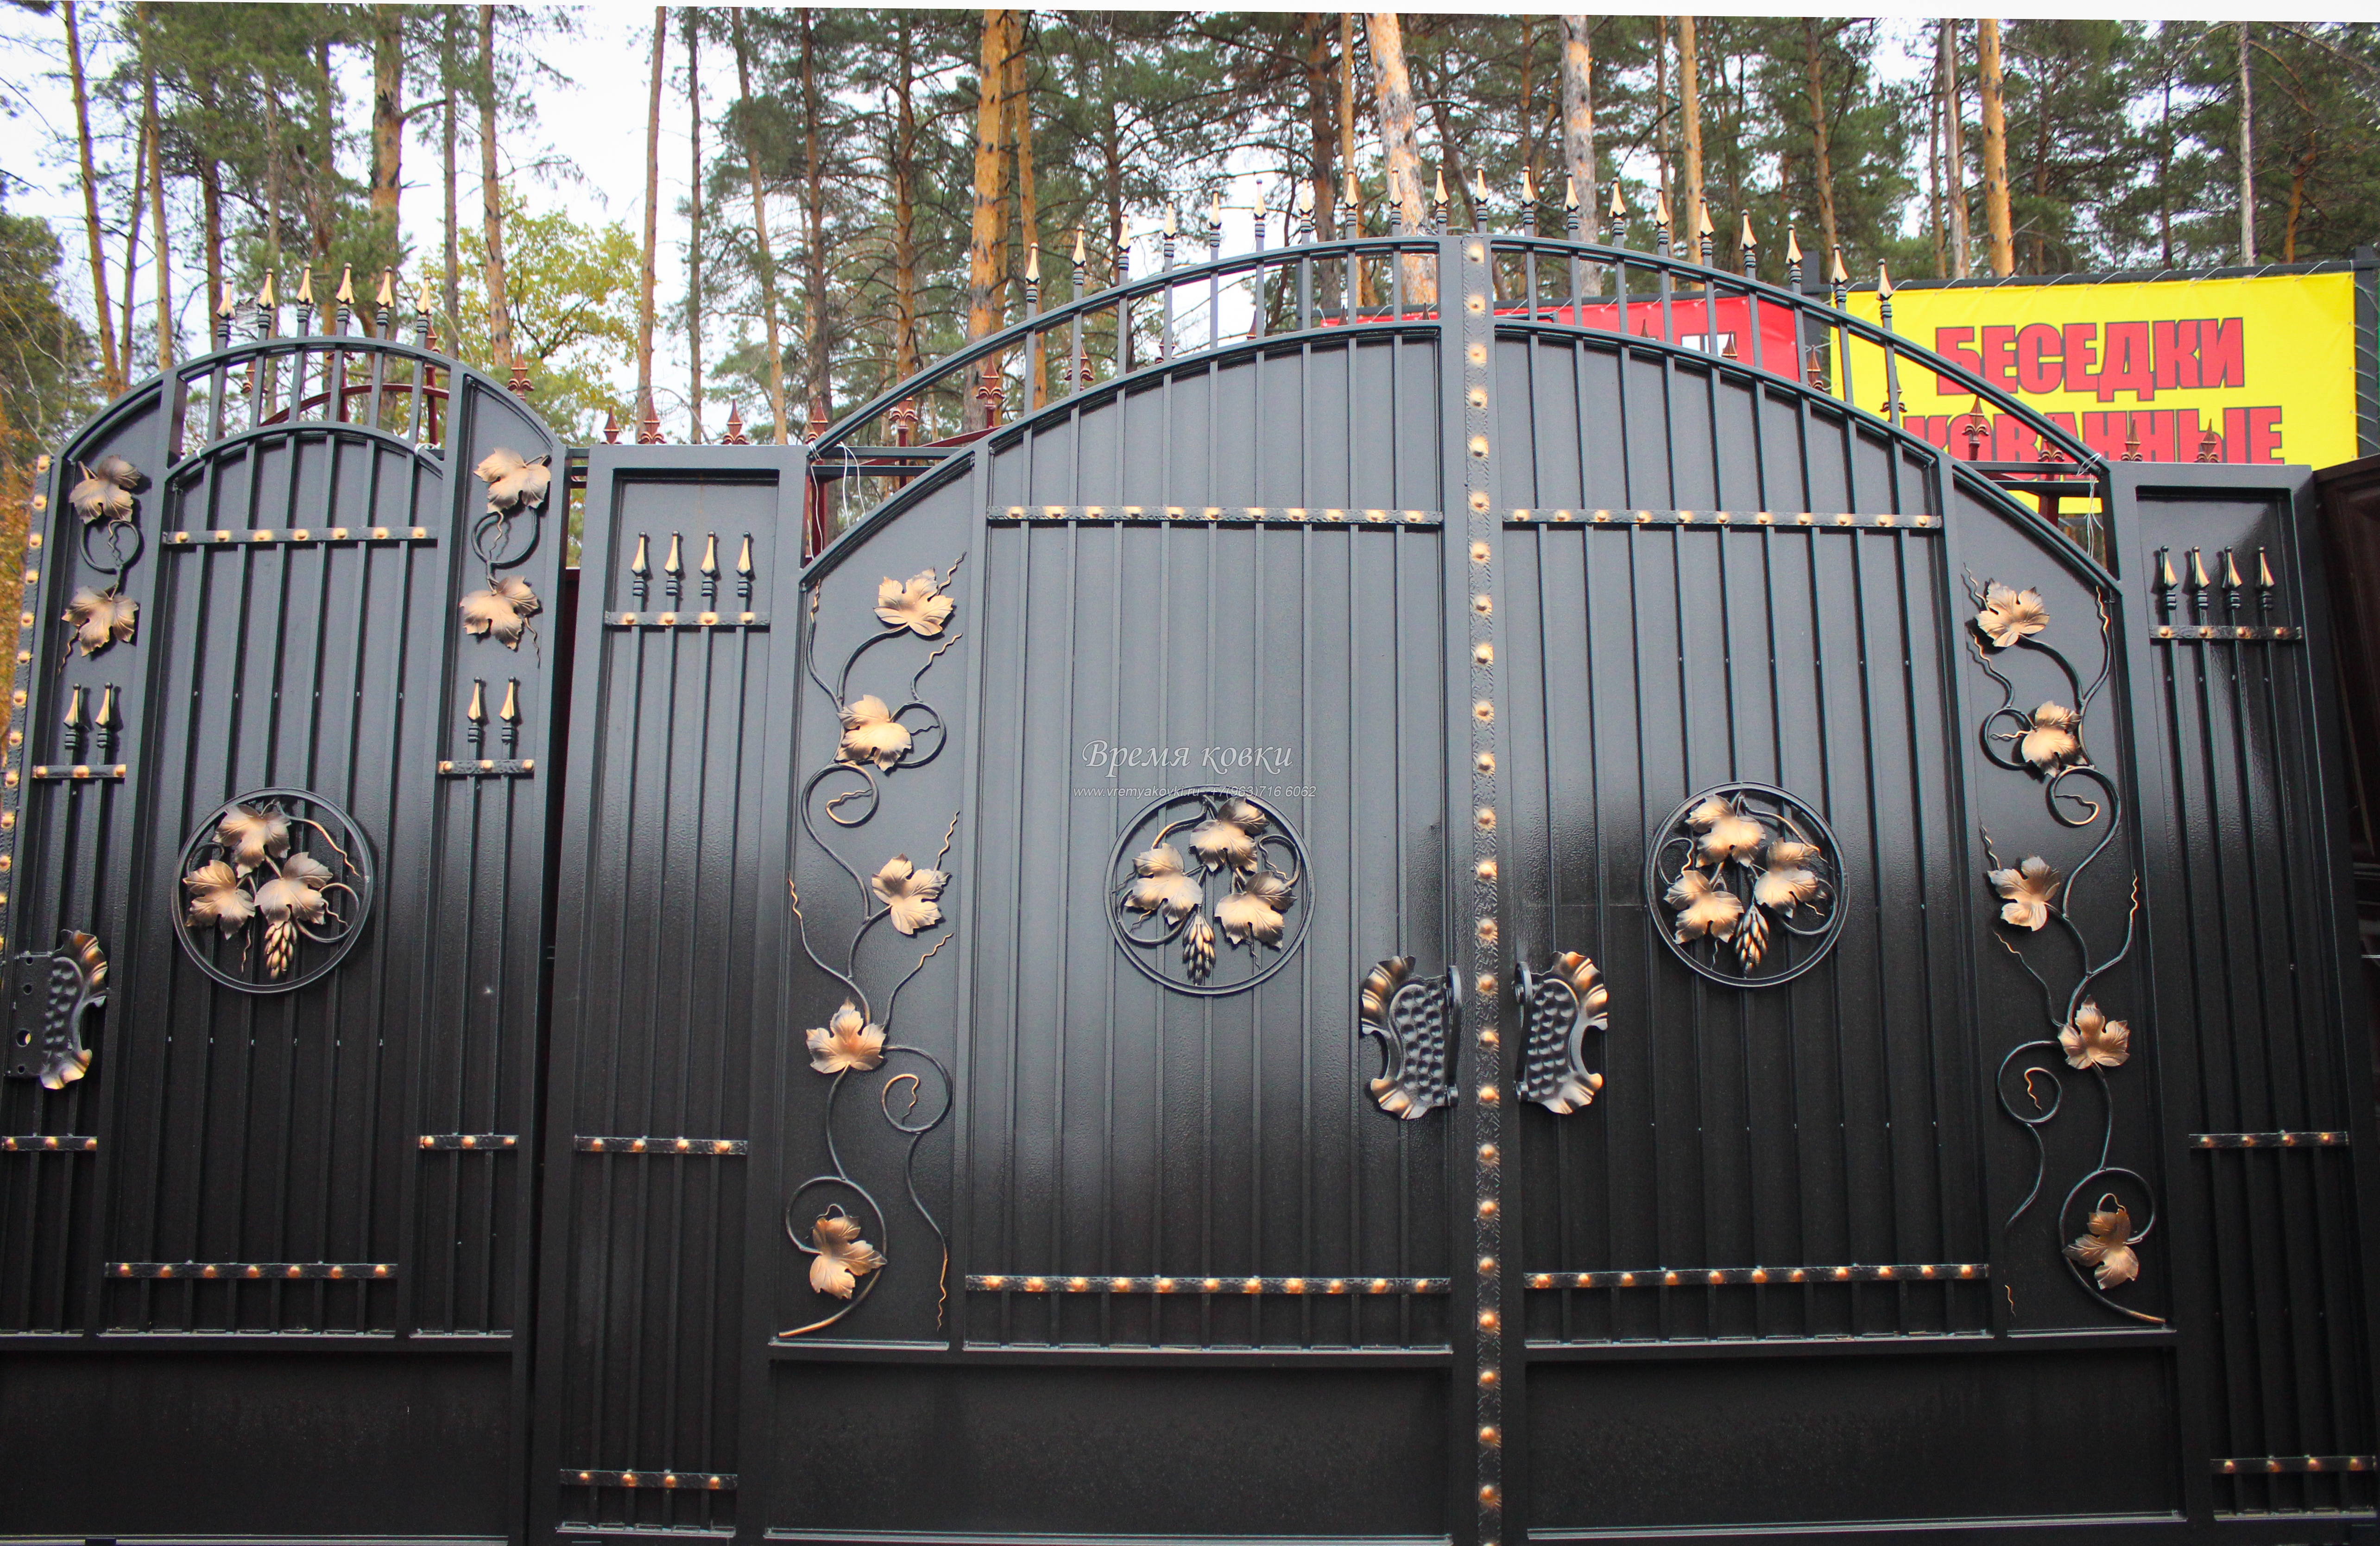 Ворота из профлиста с ковкой: Ворота из профнастила с элементами ковки. Цены на ворота и калитки